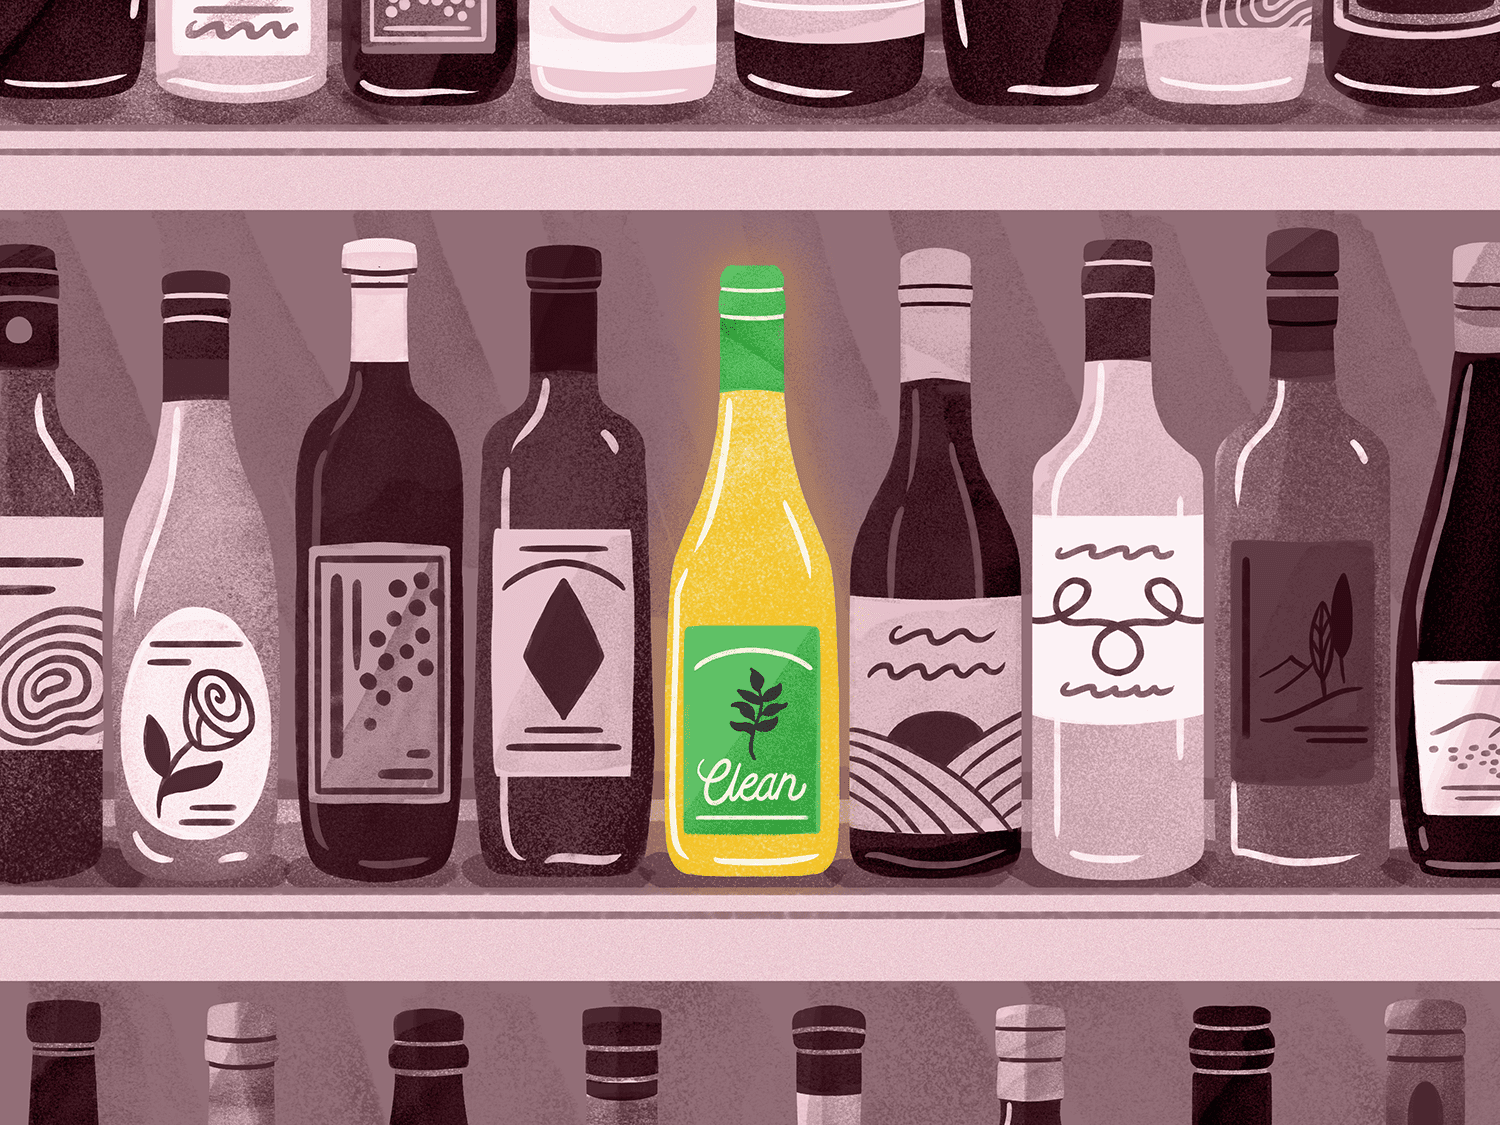 “干净”葡萄酒的插图